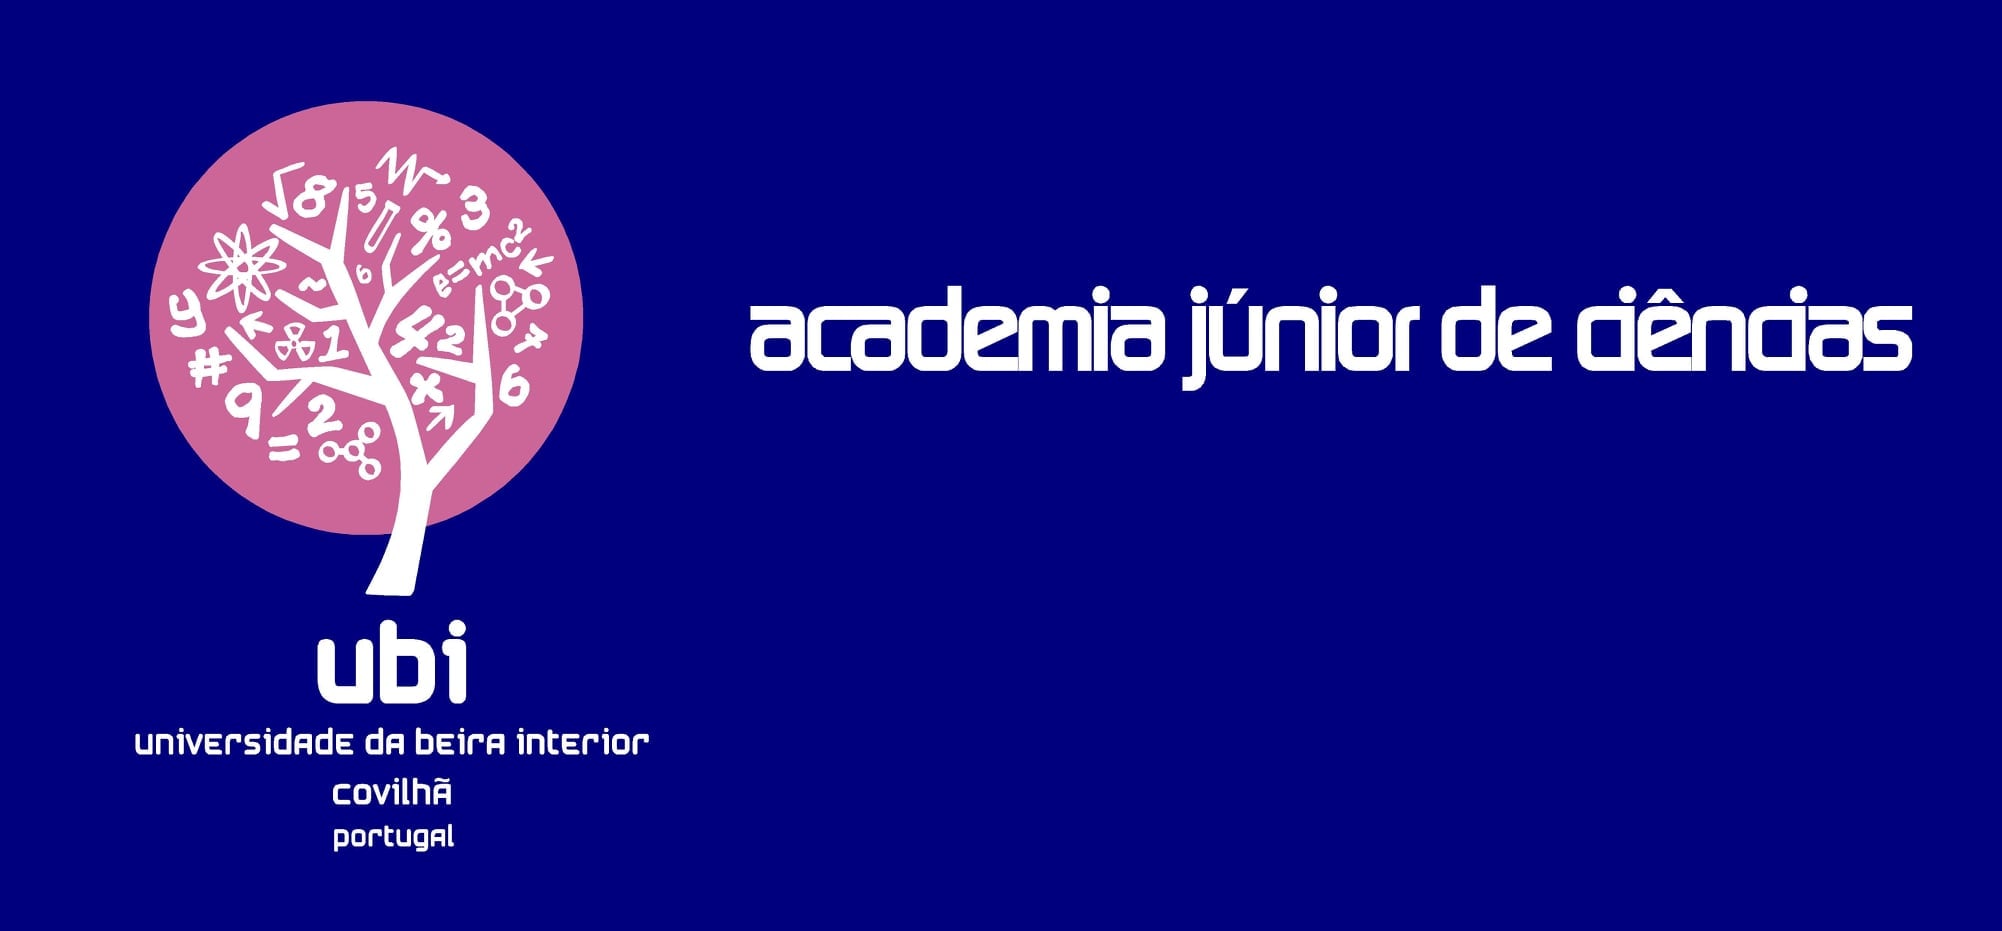 Logotipo da Academia Júnior de Ciências. fonte: UBI.pt